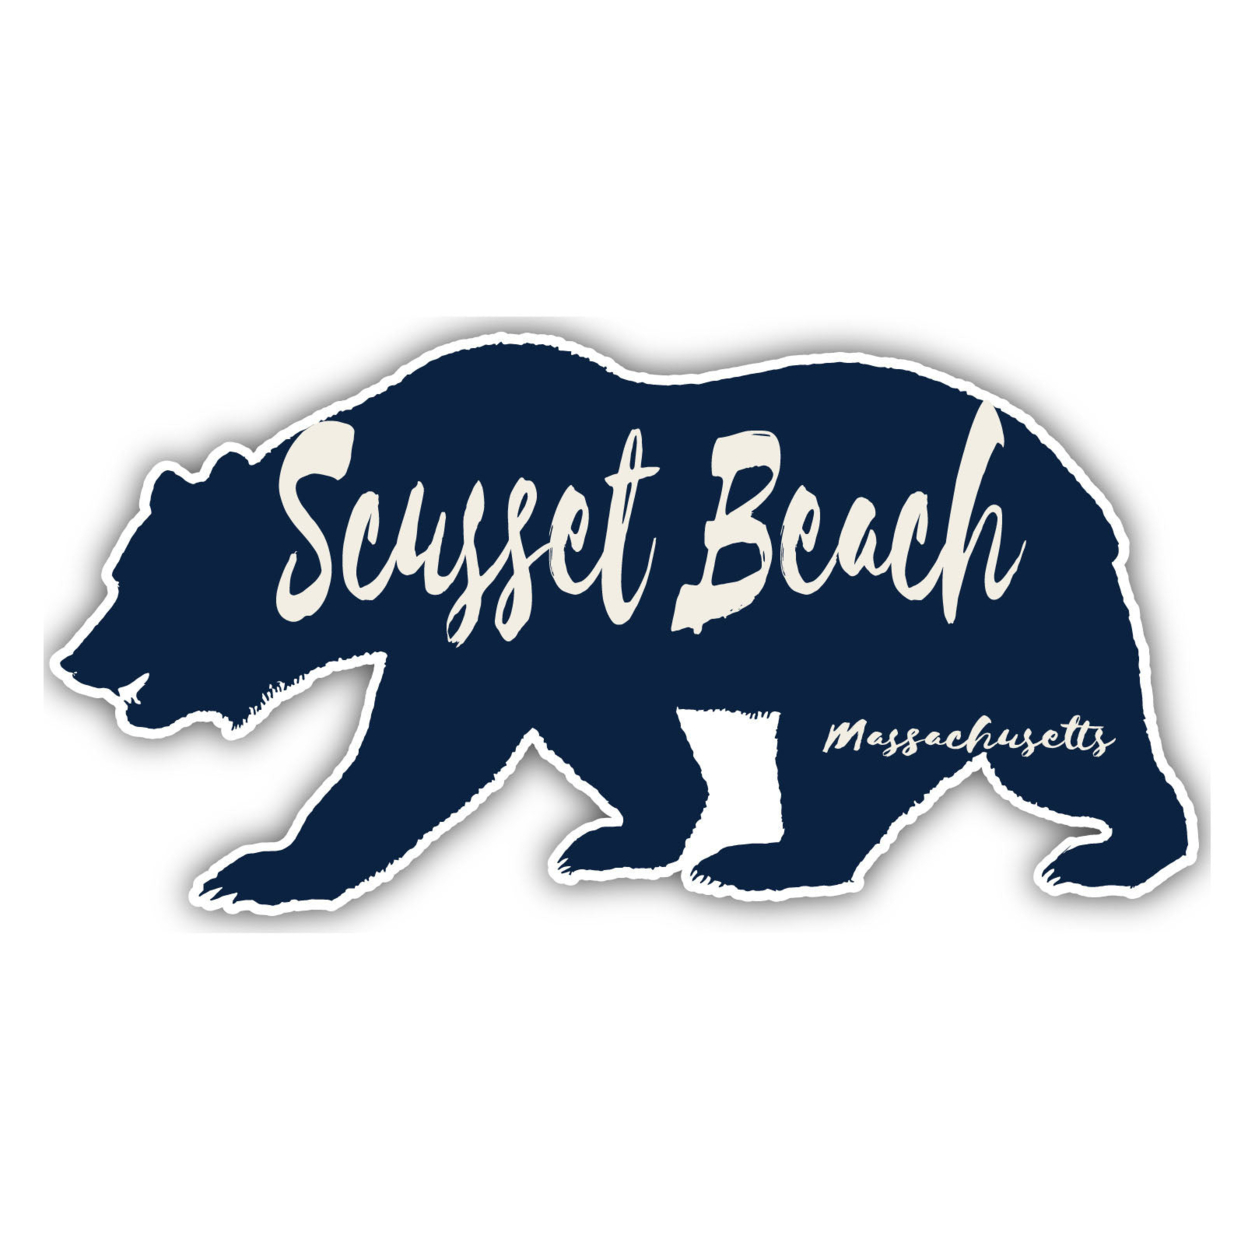 Scusset Beach Massachusetts Souvenir Decorative Stickers (Choose Theme And Size) - Single Unit, 4-Inch, Bear